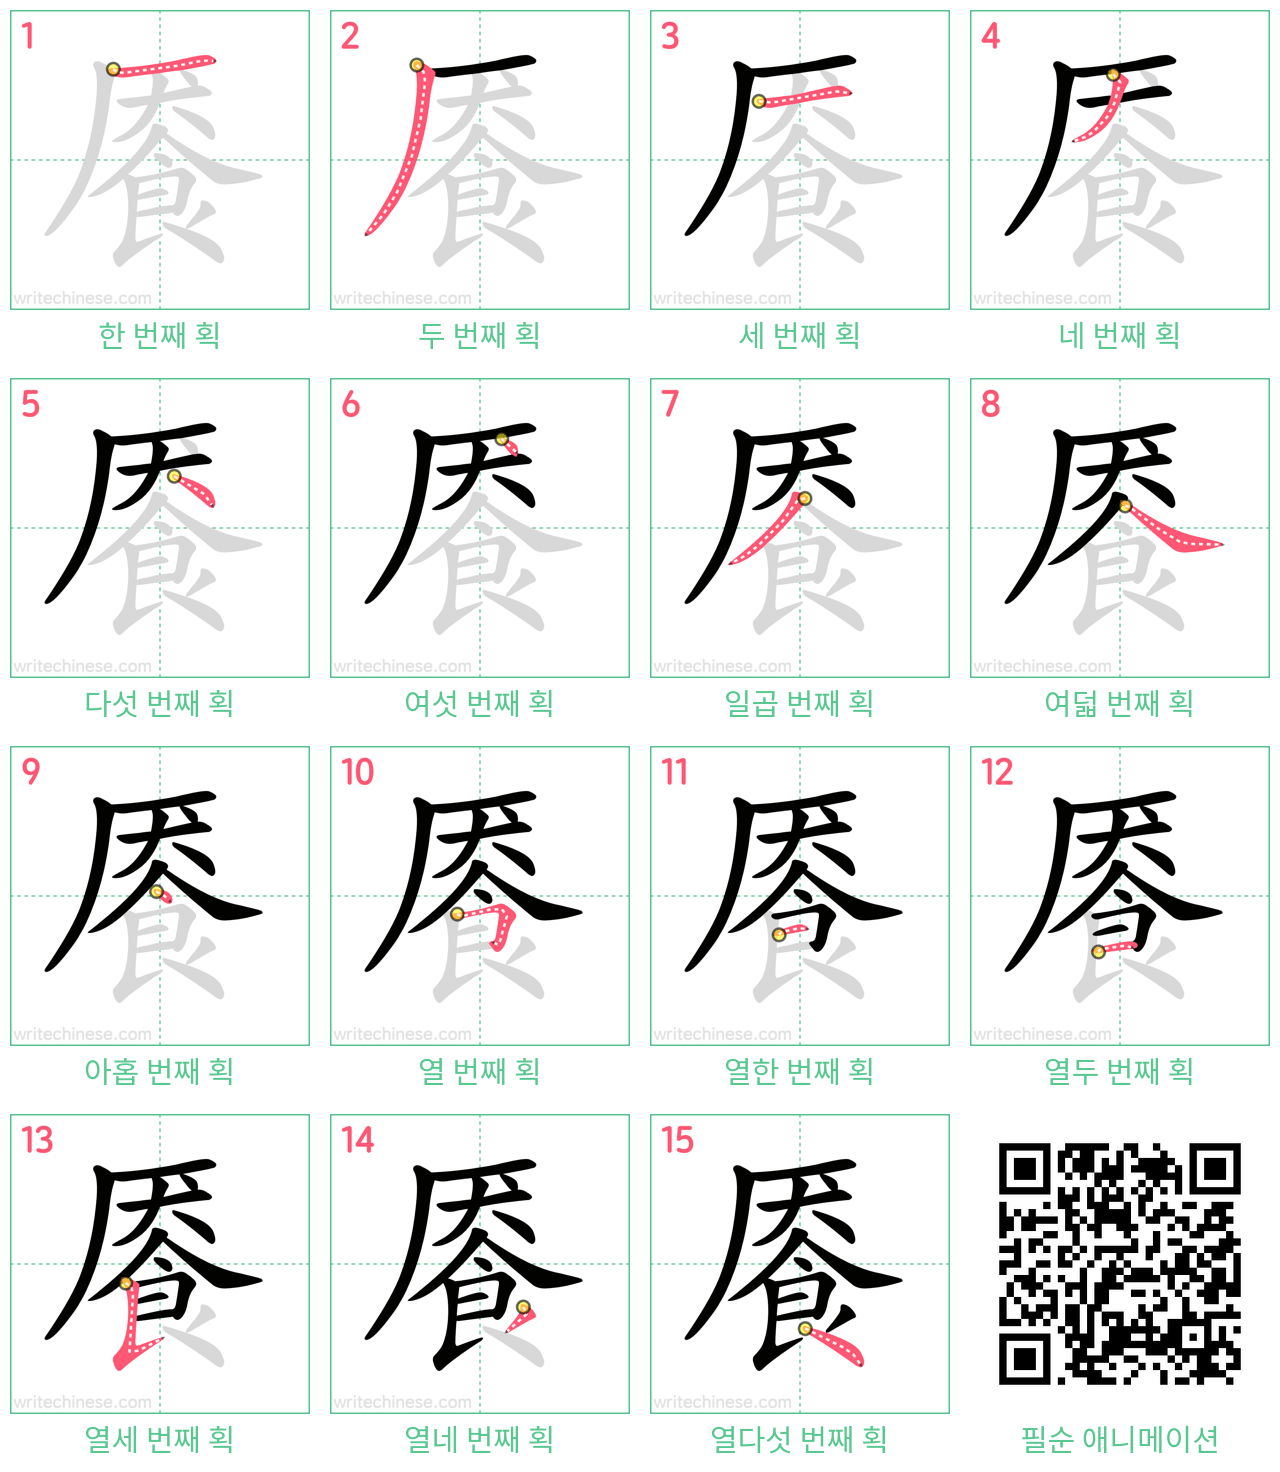 餍 step-by-step stroke order diagrams